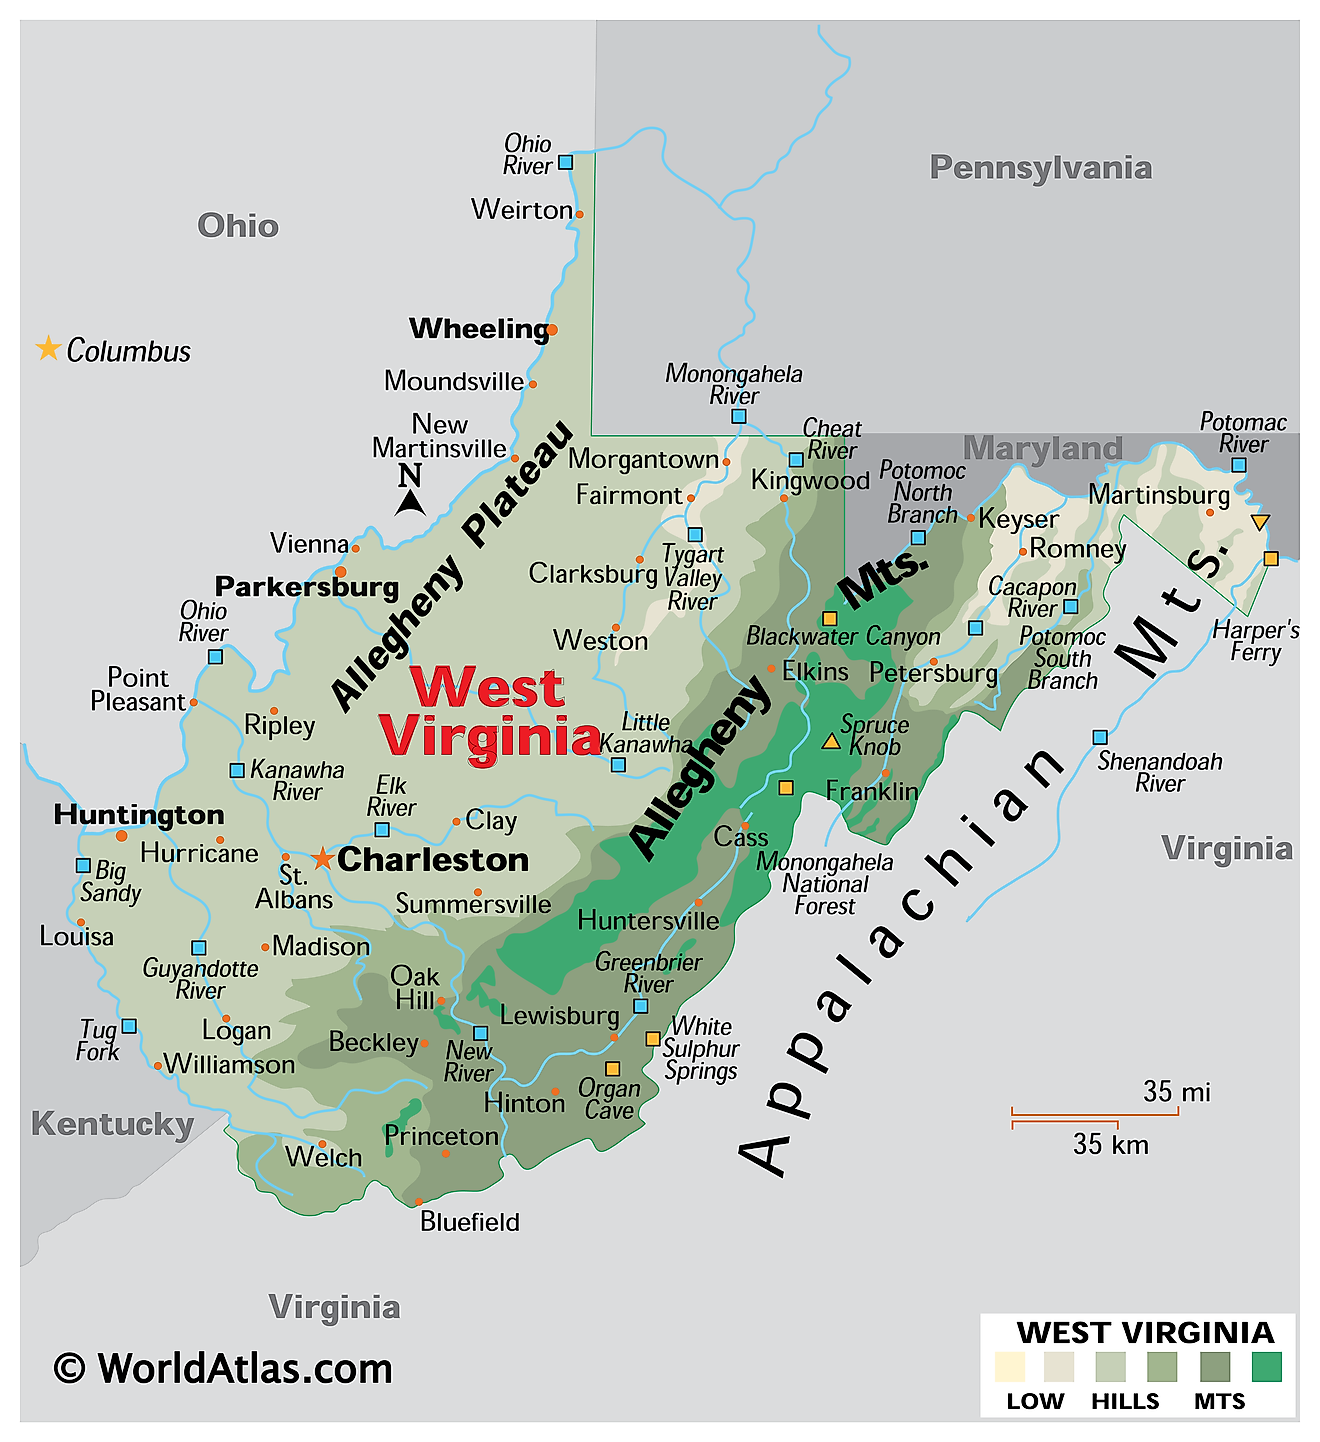 Mappa fisica della Virginia Occidentale. Essa mostra le caratteristiche fisiche del West Virginia comprese le sue catene montuose, altipiani e fiumi principali.